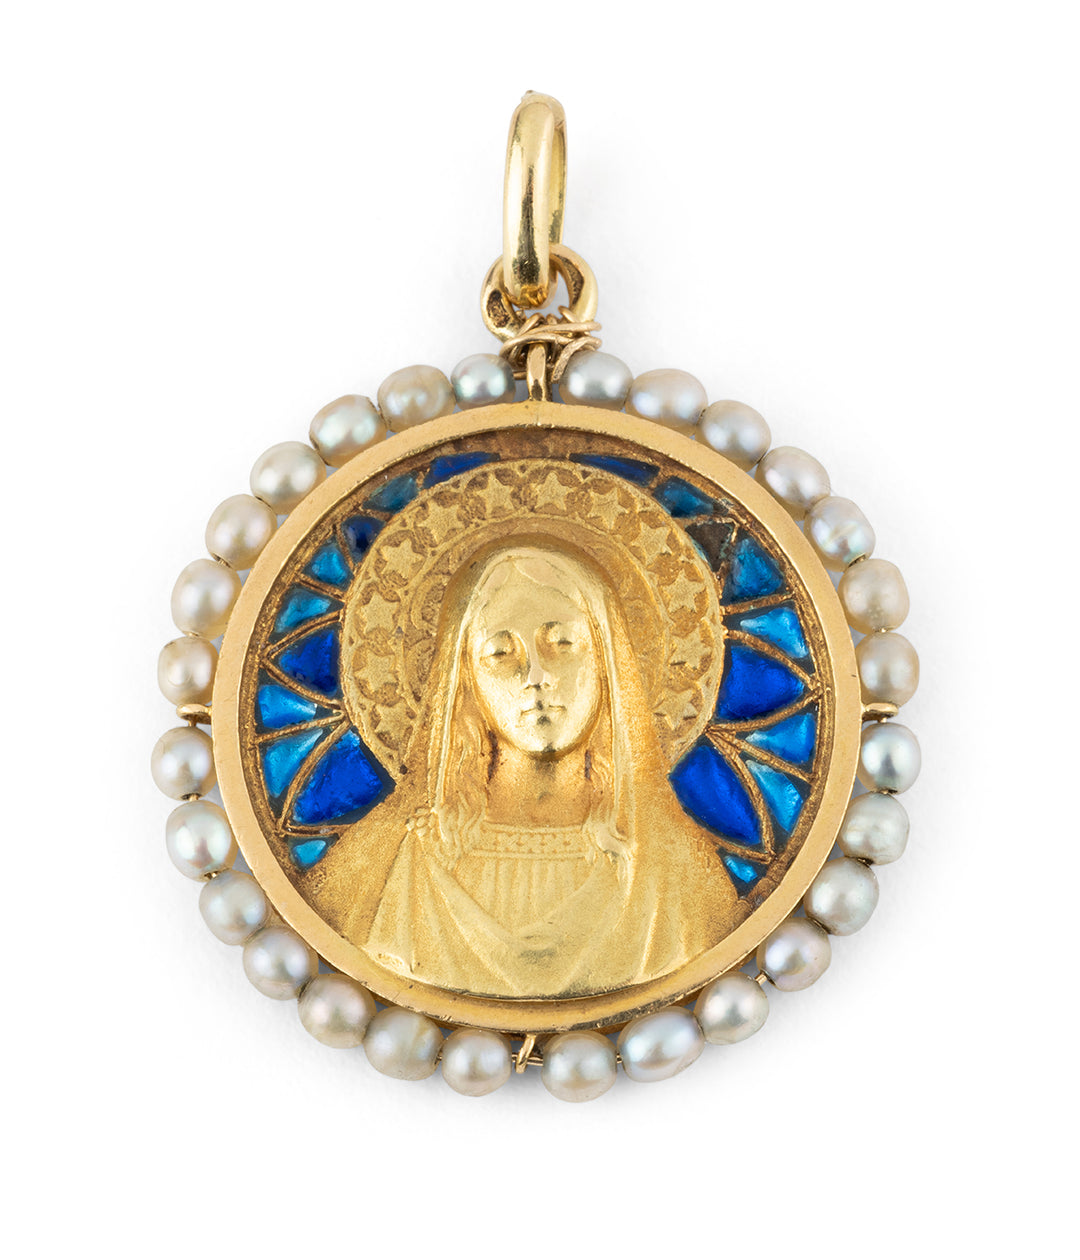 Antique religious medal Gaizka - Caillou Paris